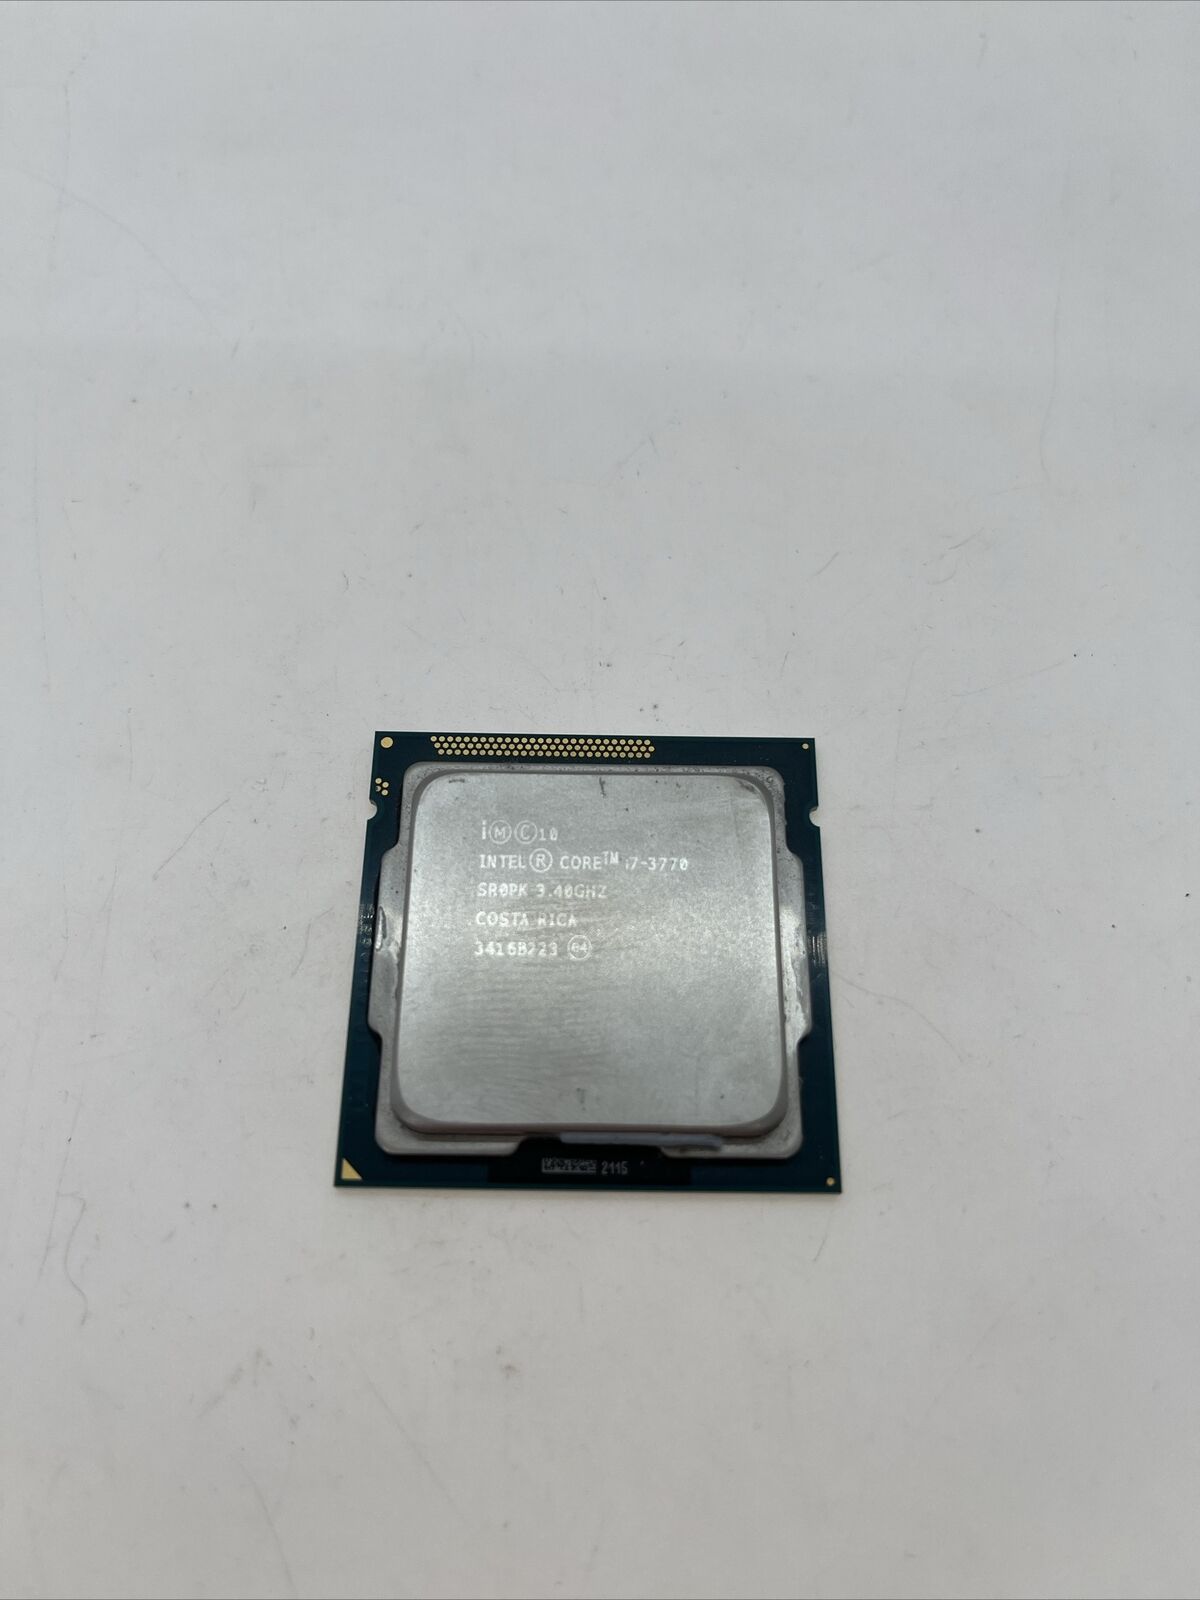 Intel Core i7-3770 SR0PK 3.40GHz Quad Core LGA1155 8MB Processor CPU